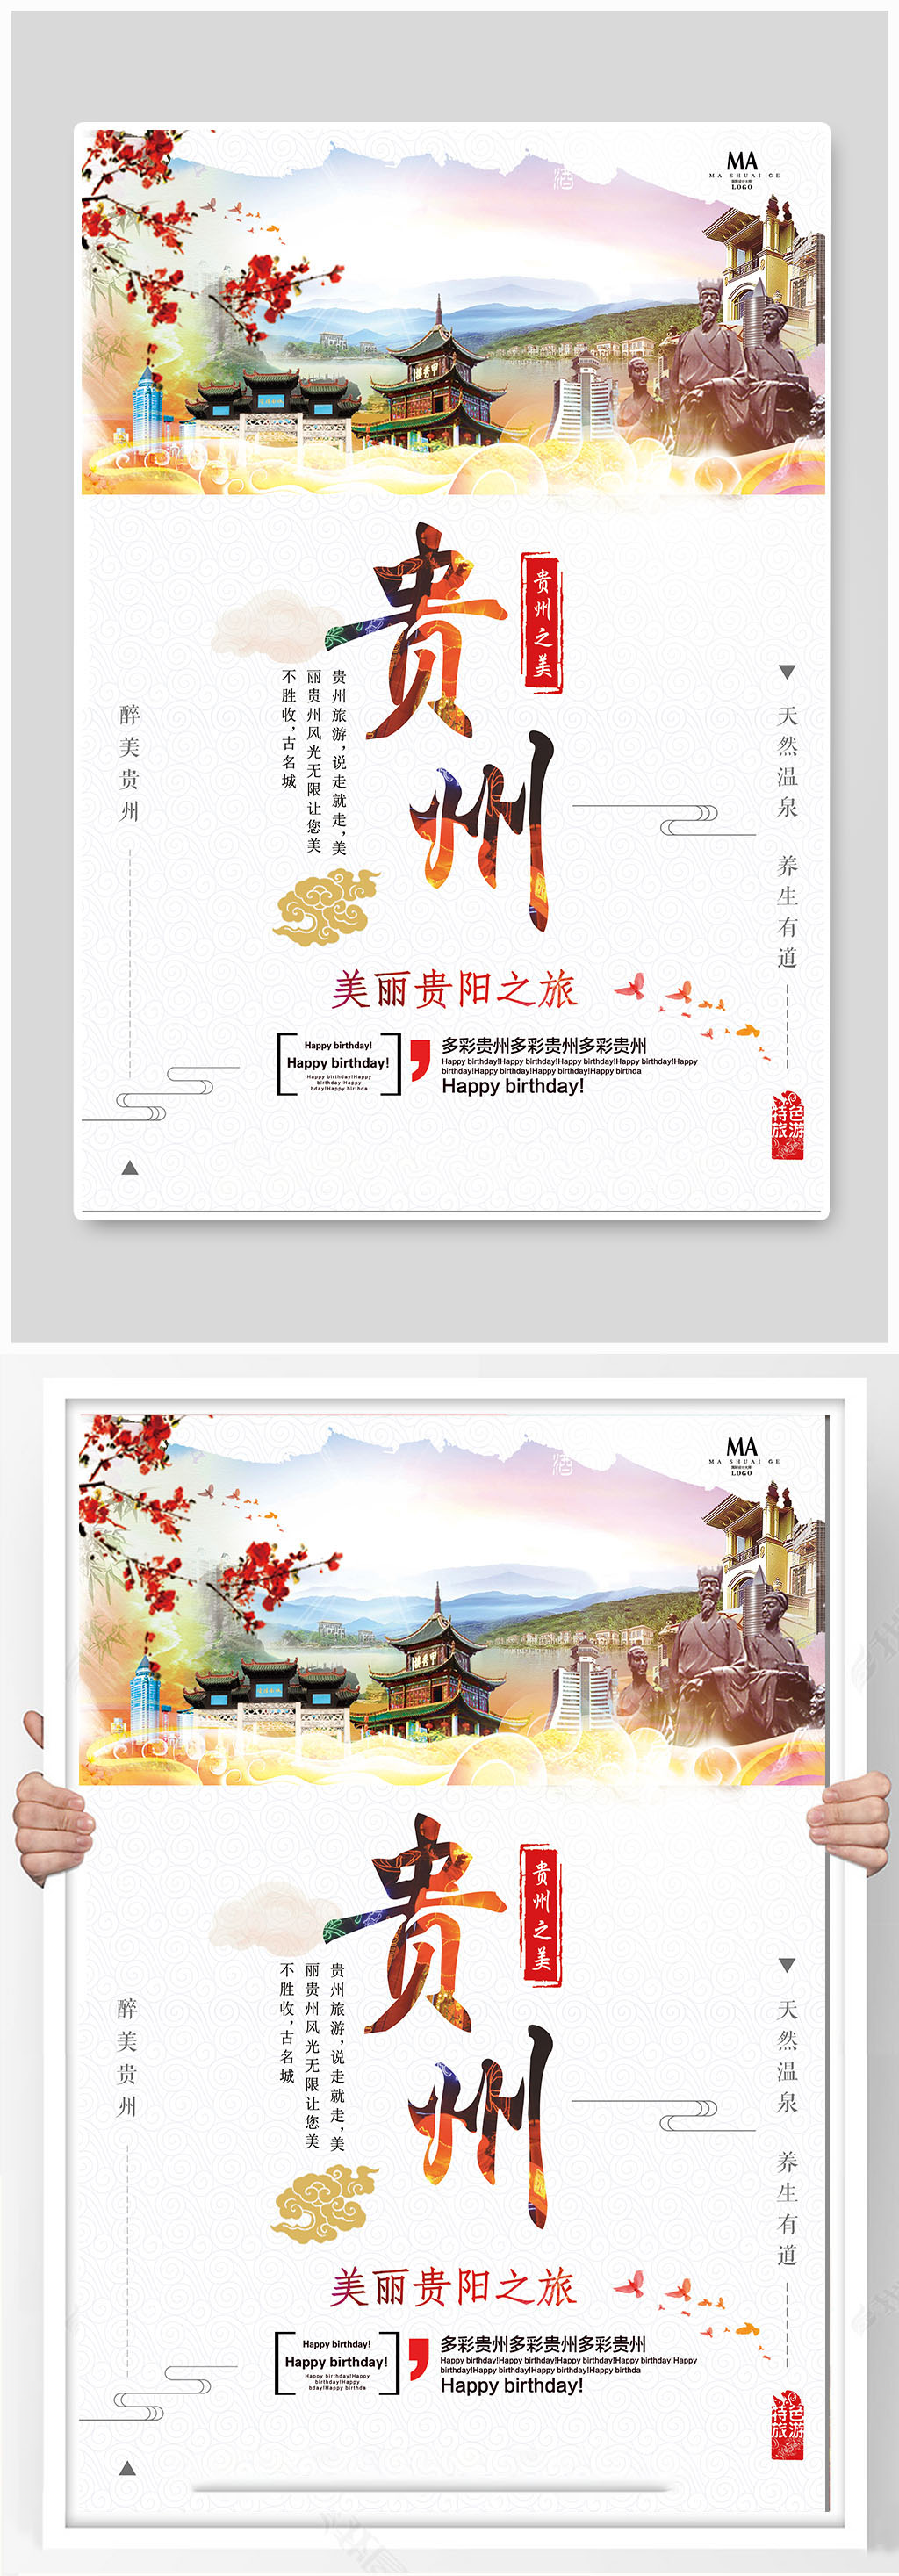 贵州之美旅游海报设计